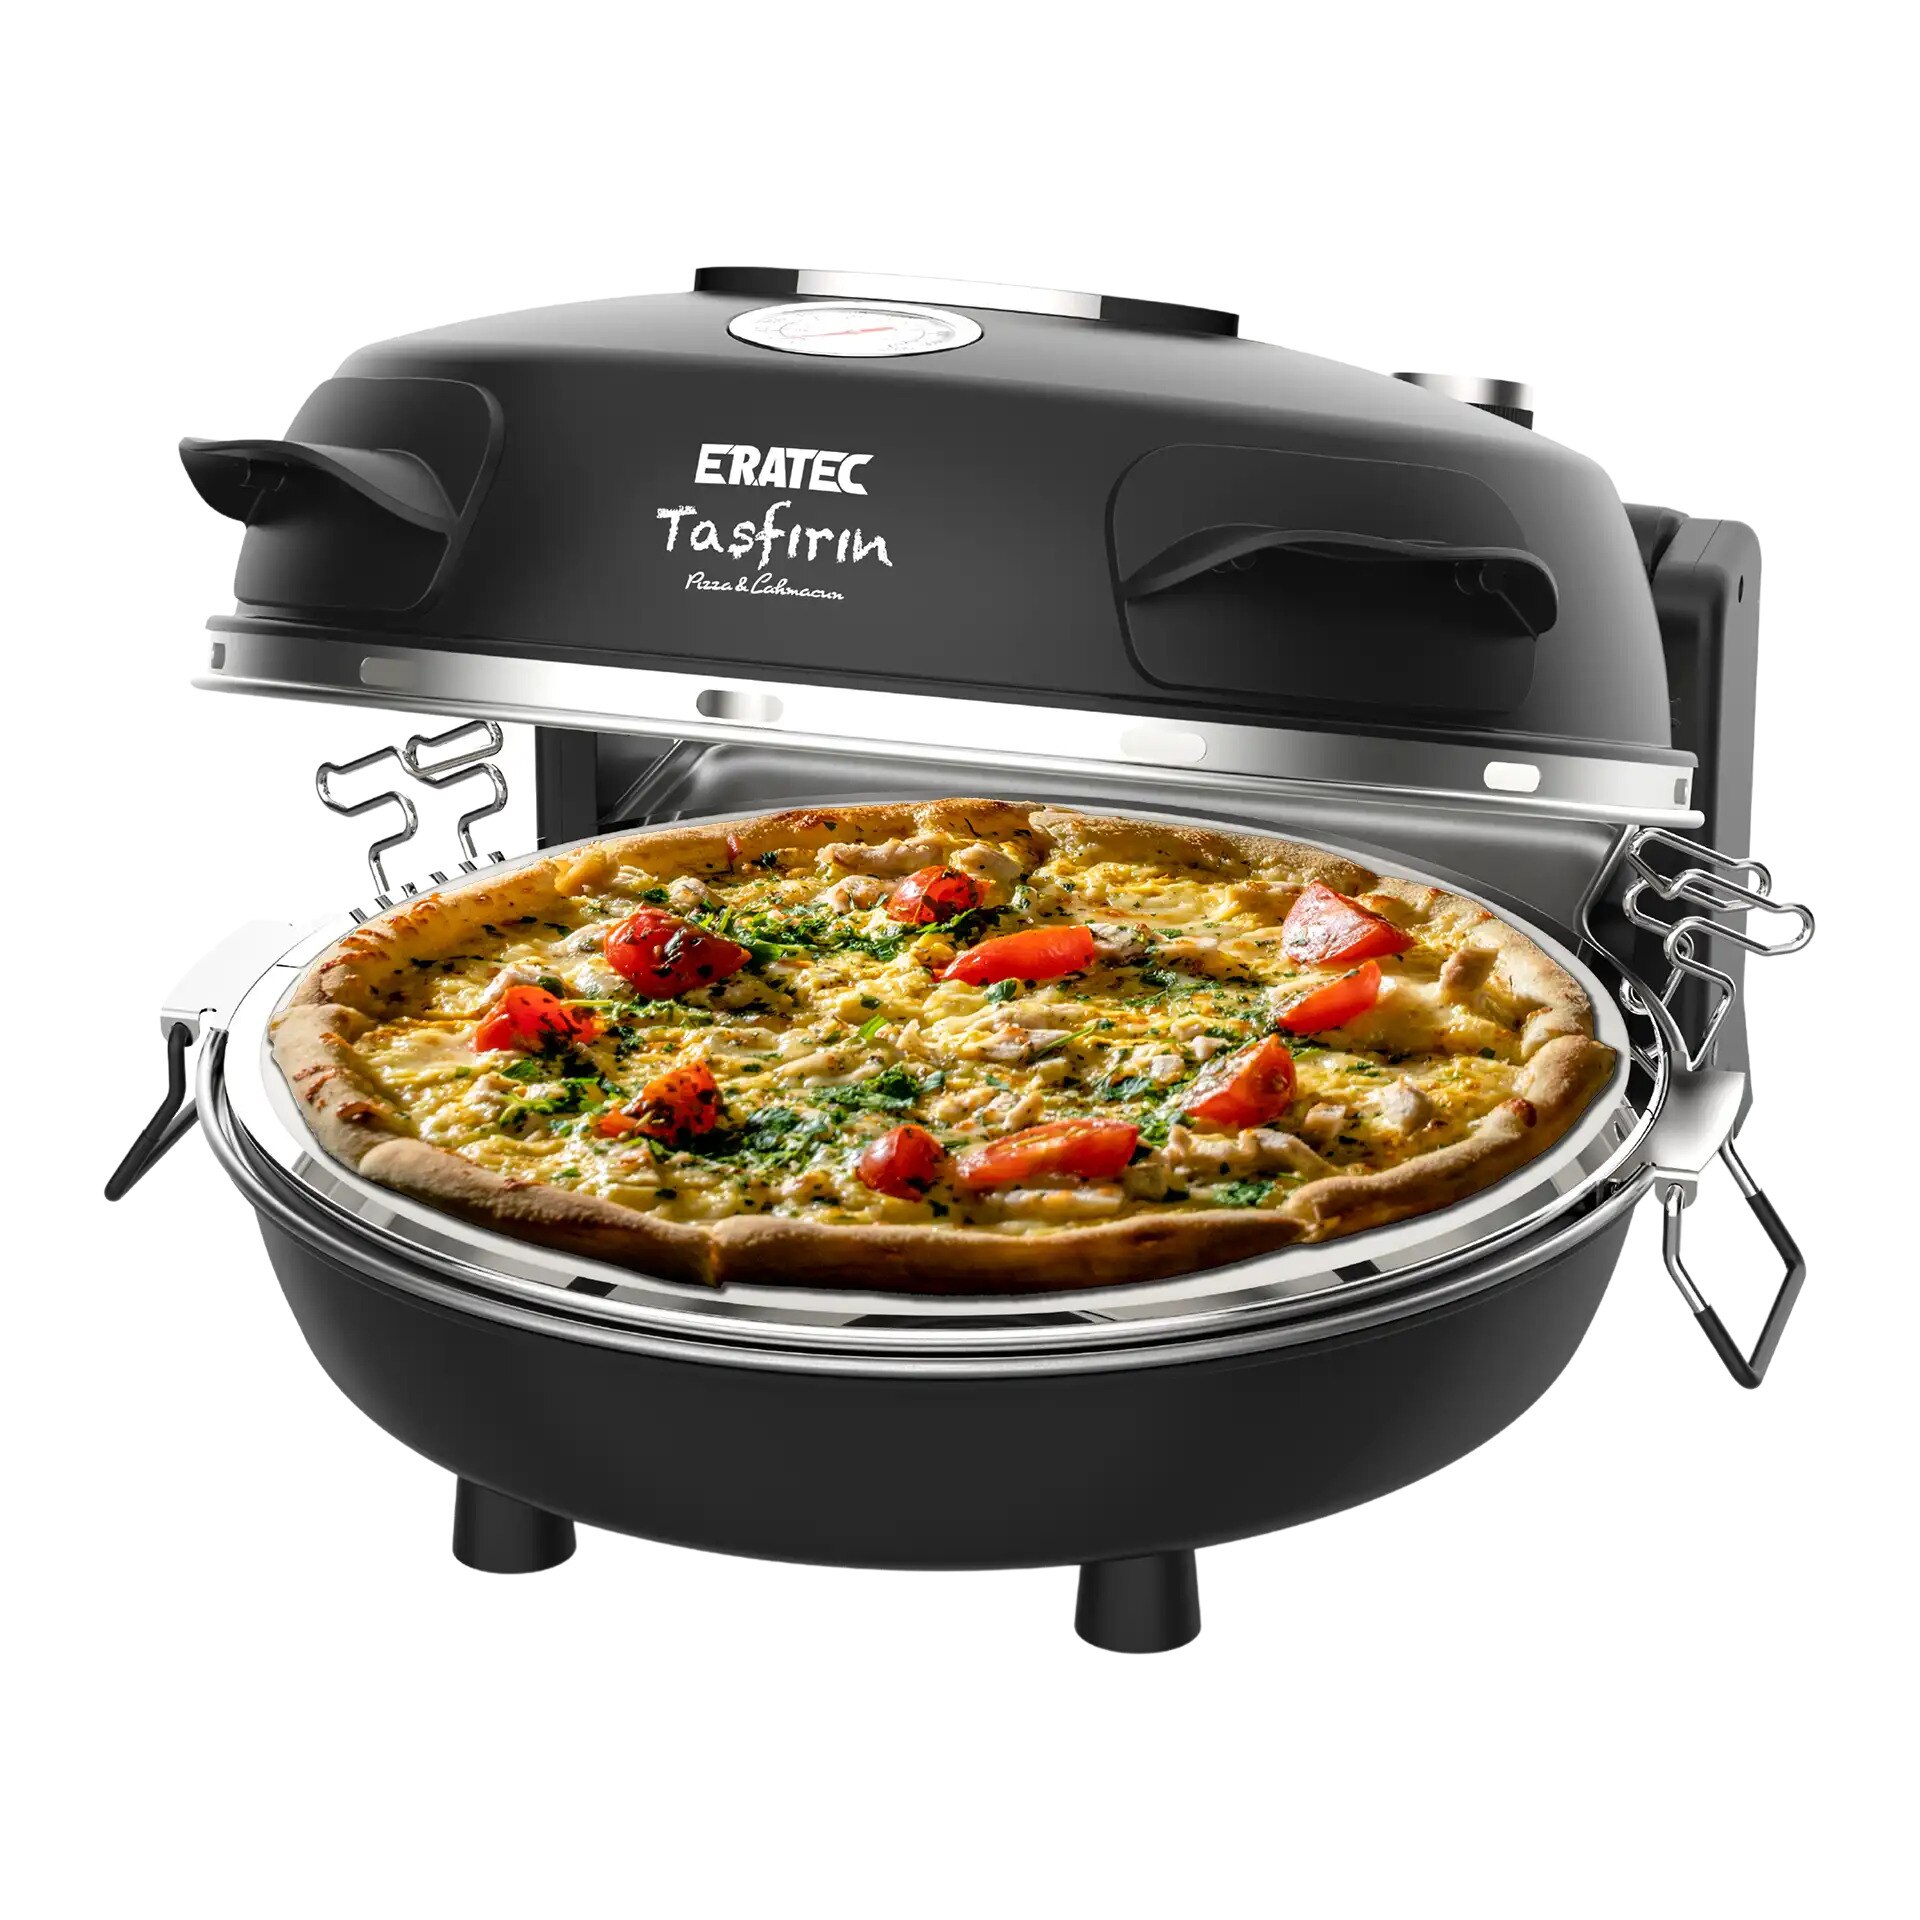 Eratec PM-27 (Yeni Model) Taş Fırın Lahmacun Pizza Pişirme Makinesi